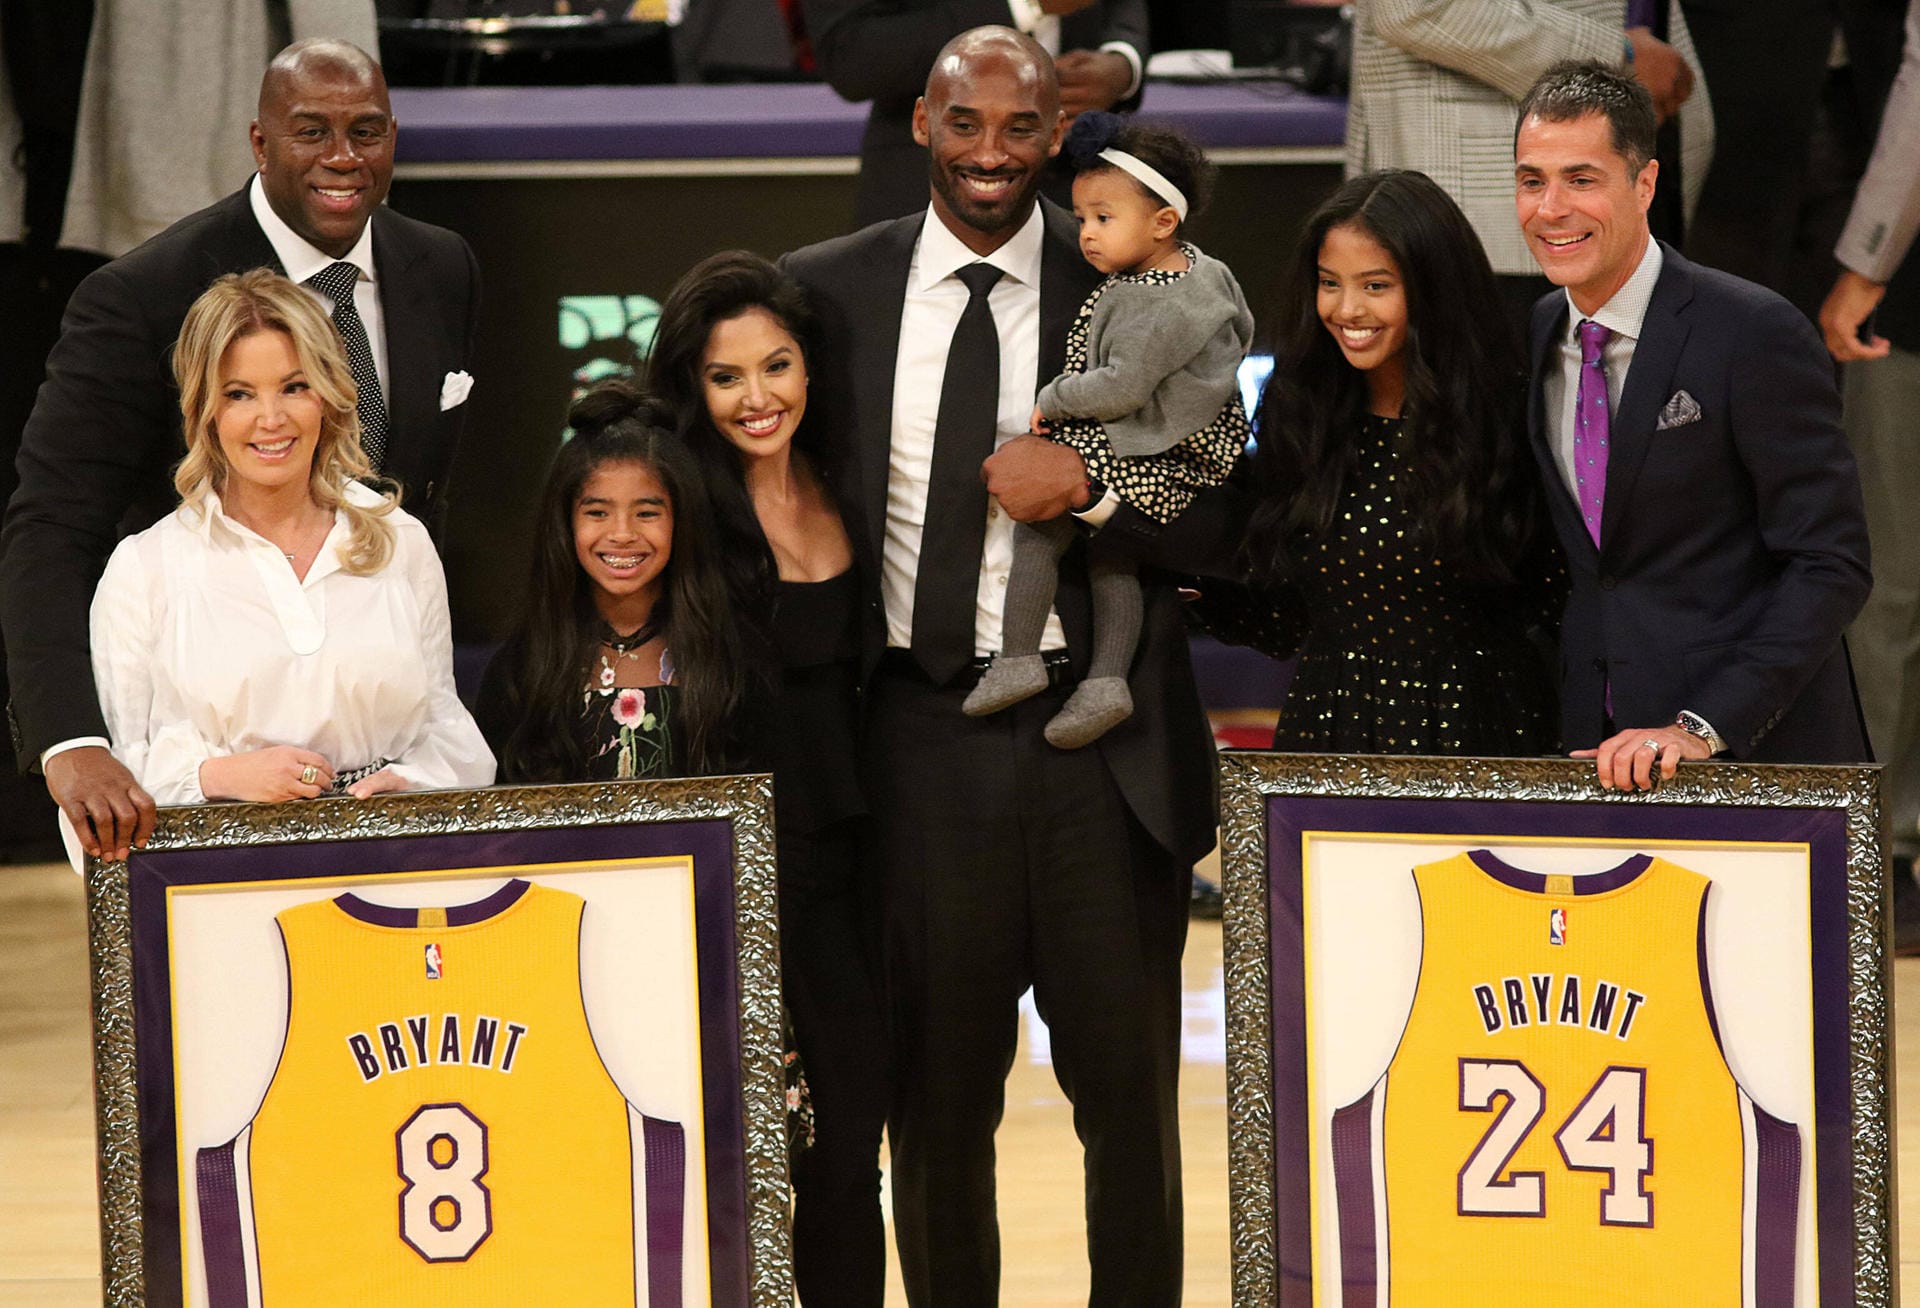 Im Dezember 2017 erhält Kobe Bryant eine besondere Ehre. Die Los Angeles Lakers "pensionieren" seine Nummern 8 und 24, mit denen er über die Jahre für das Team spielte. Sie wurden ab diesem Zeitpunkt nicht mehr vergeben.